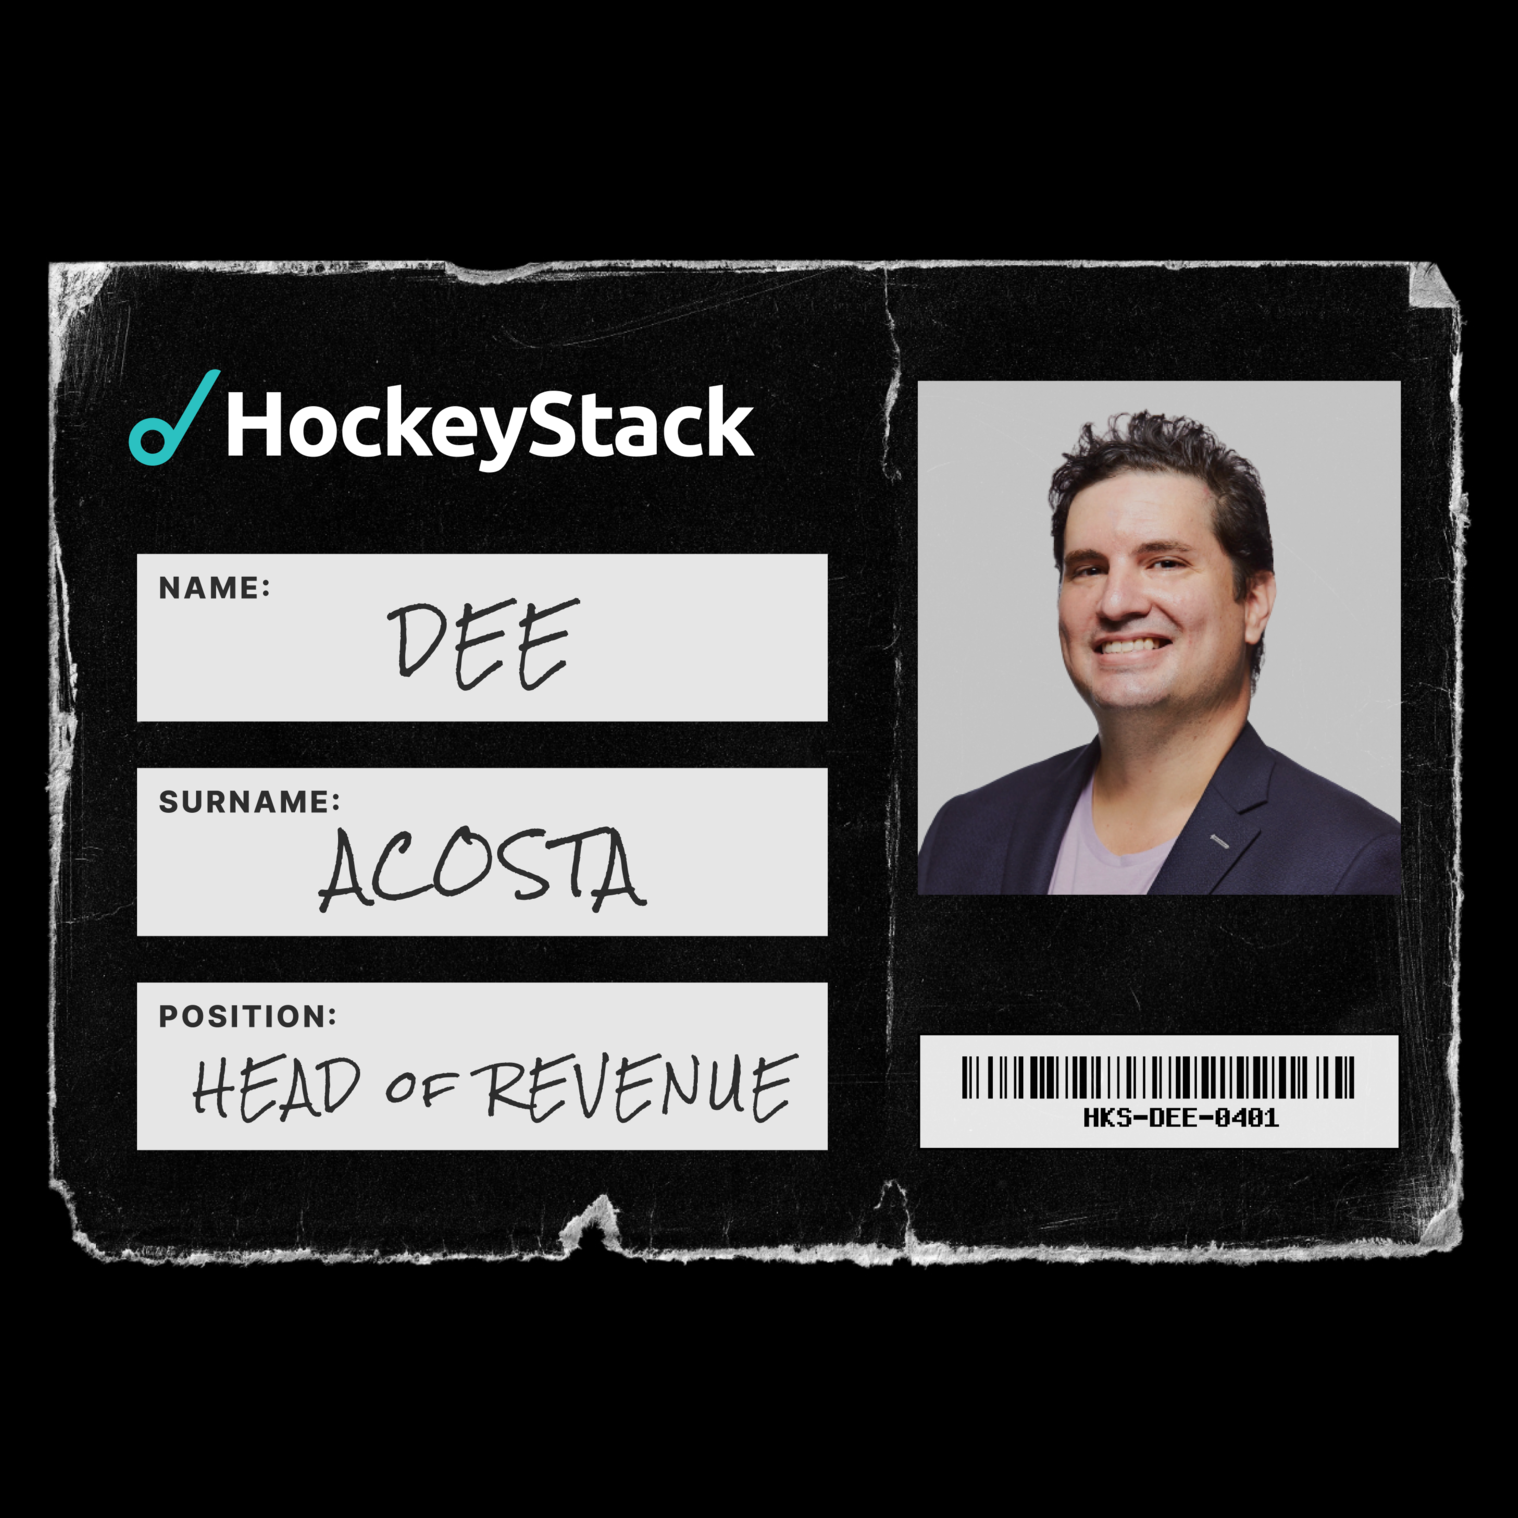 Why I joined HockeyStack